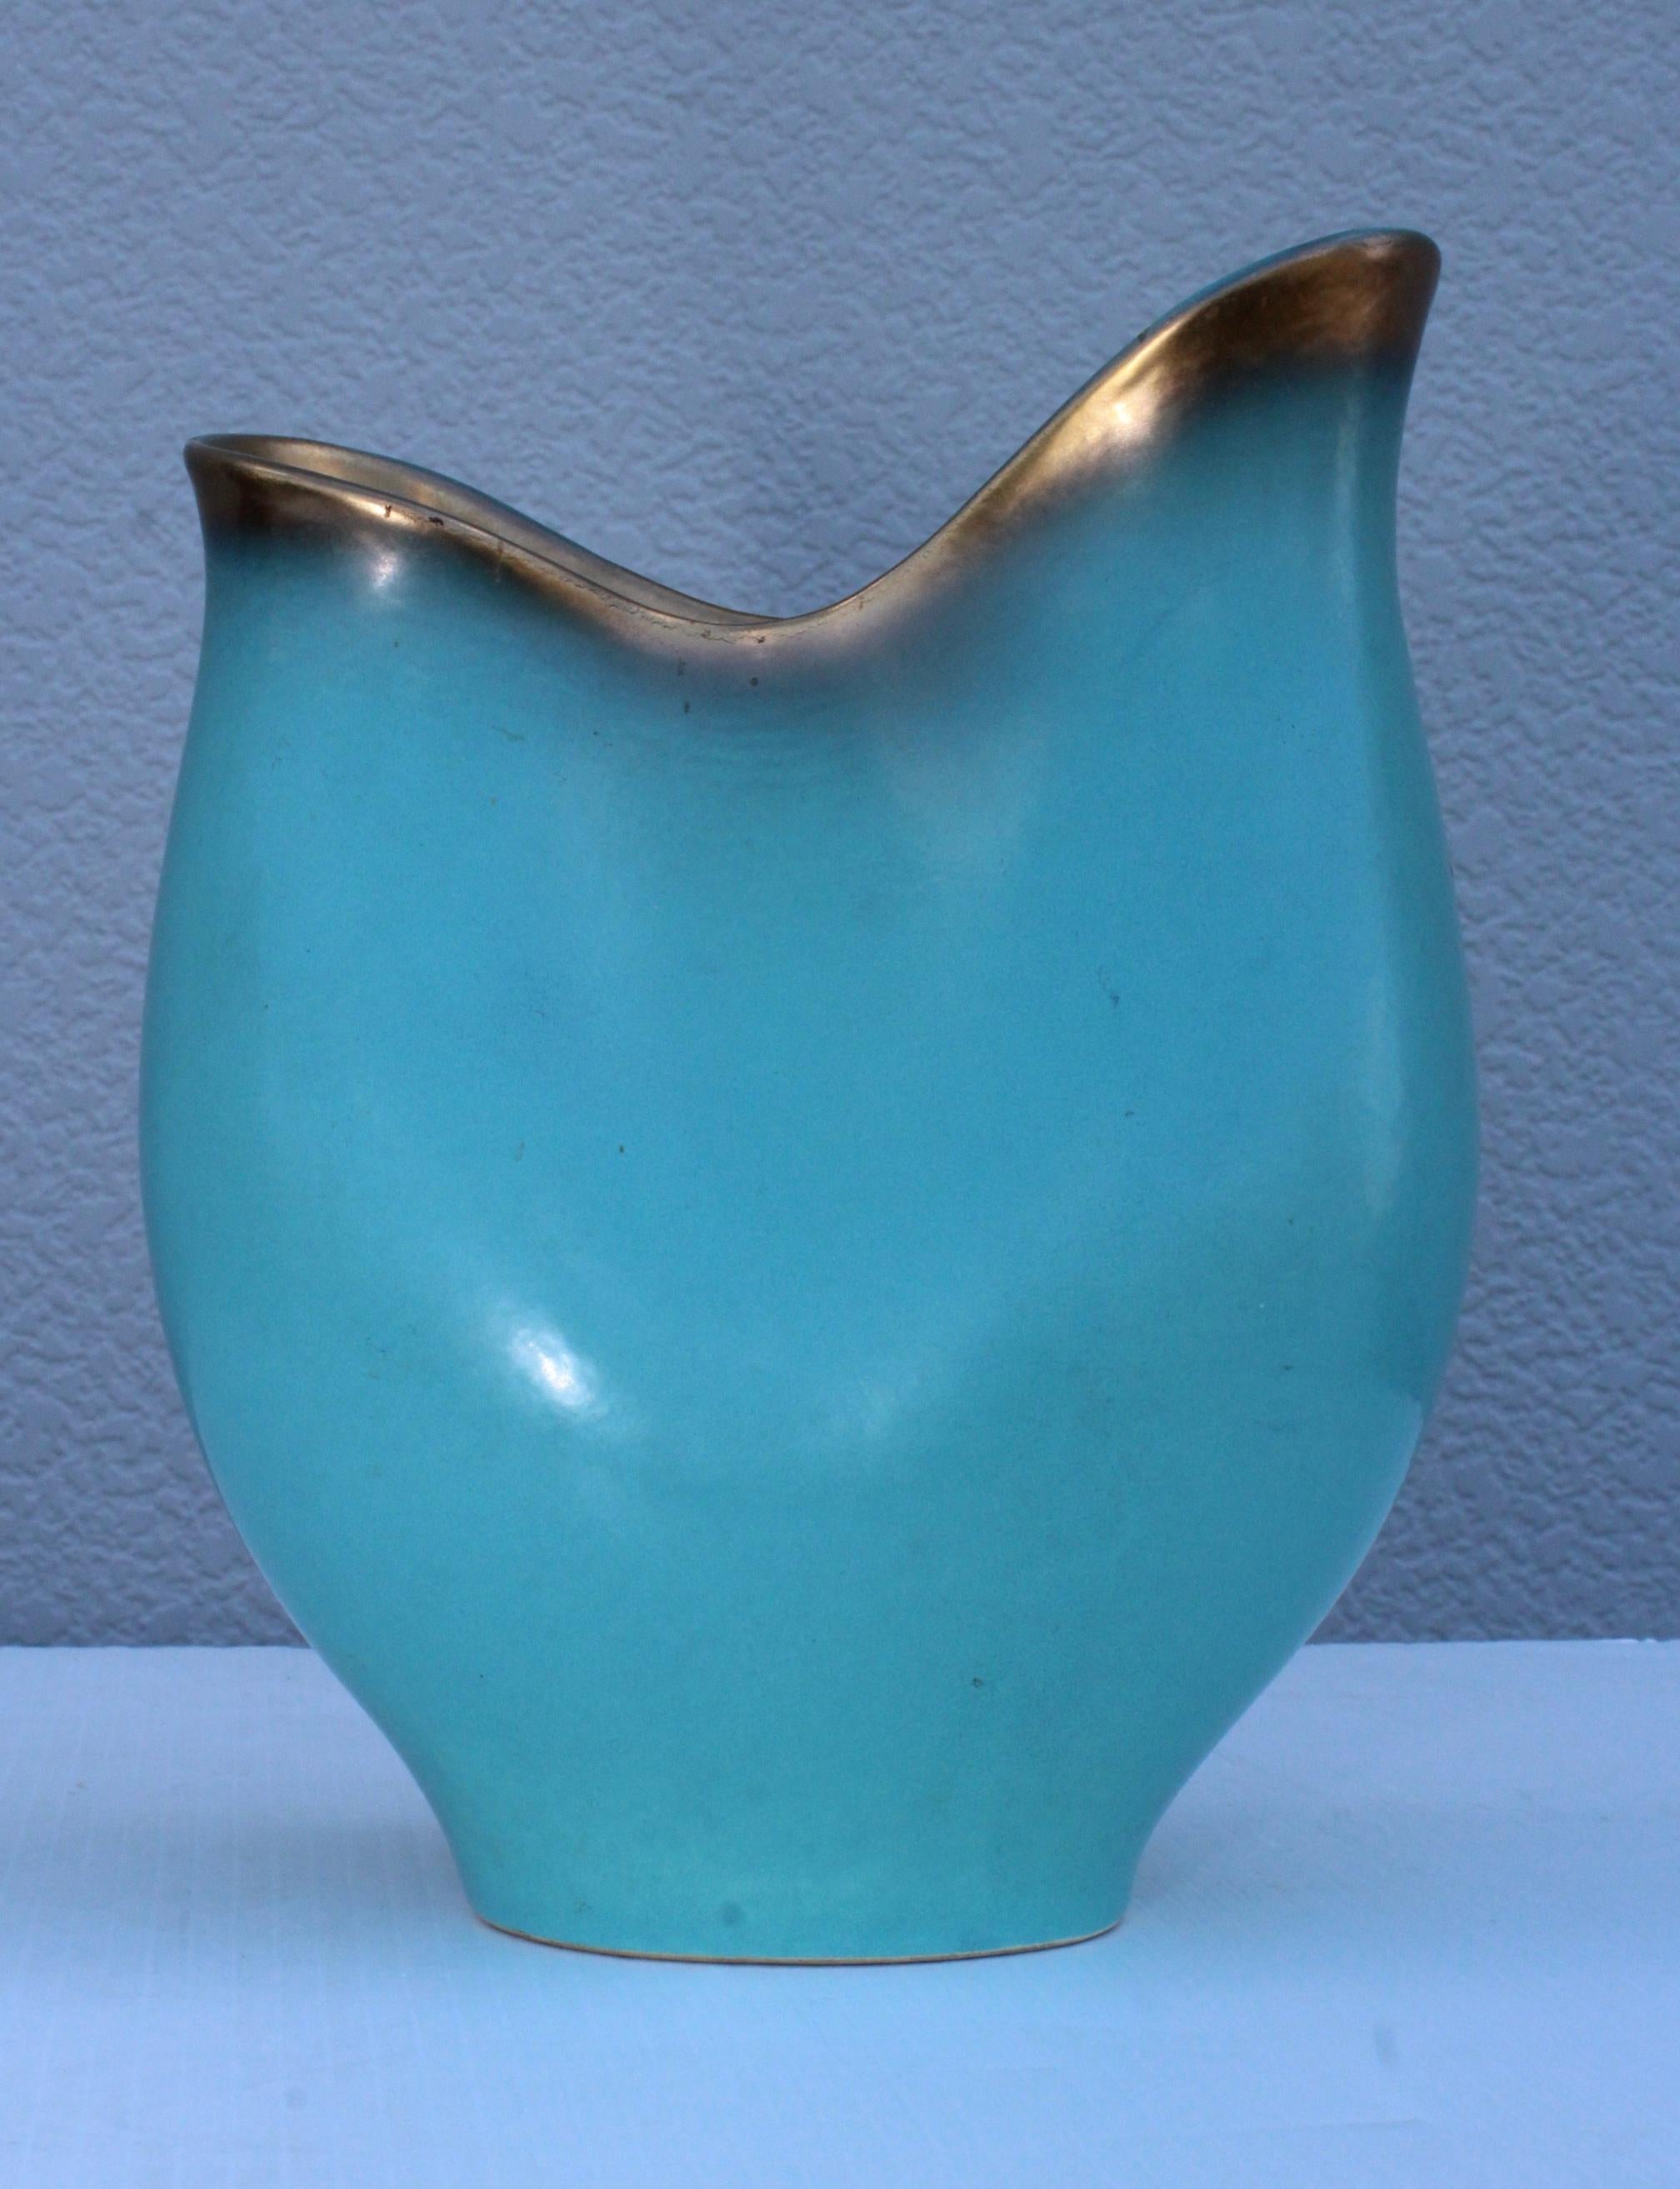 1940s ceramic sculptural vase by Wien Keramos Austria. In vintage original condition.